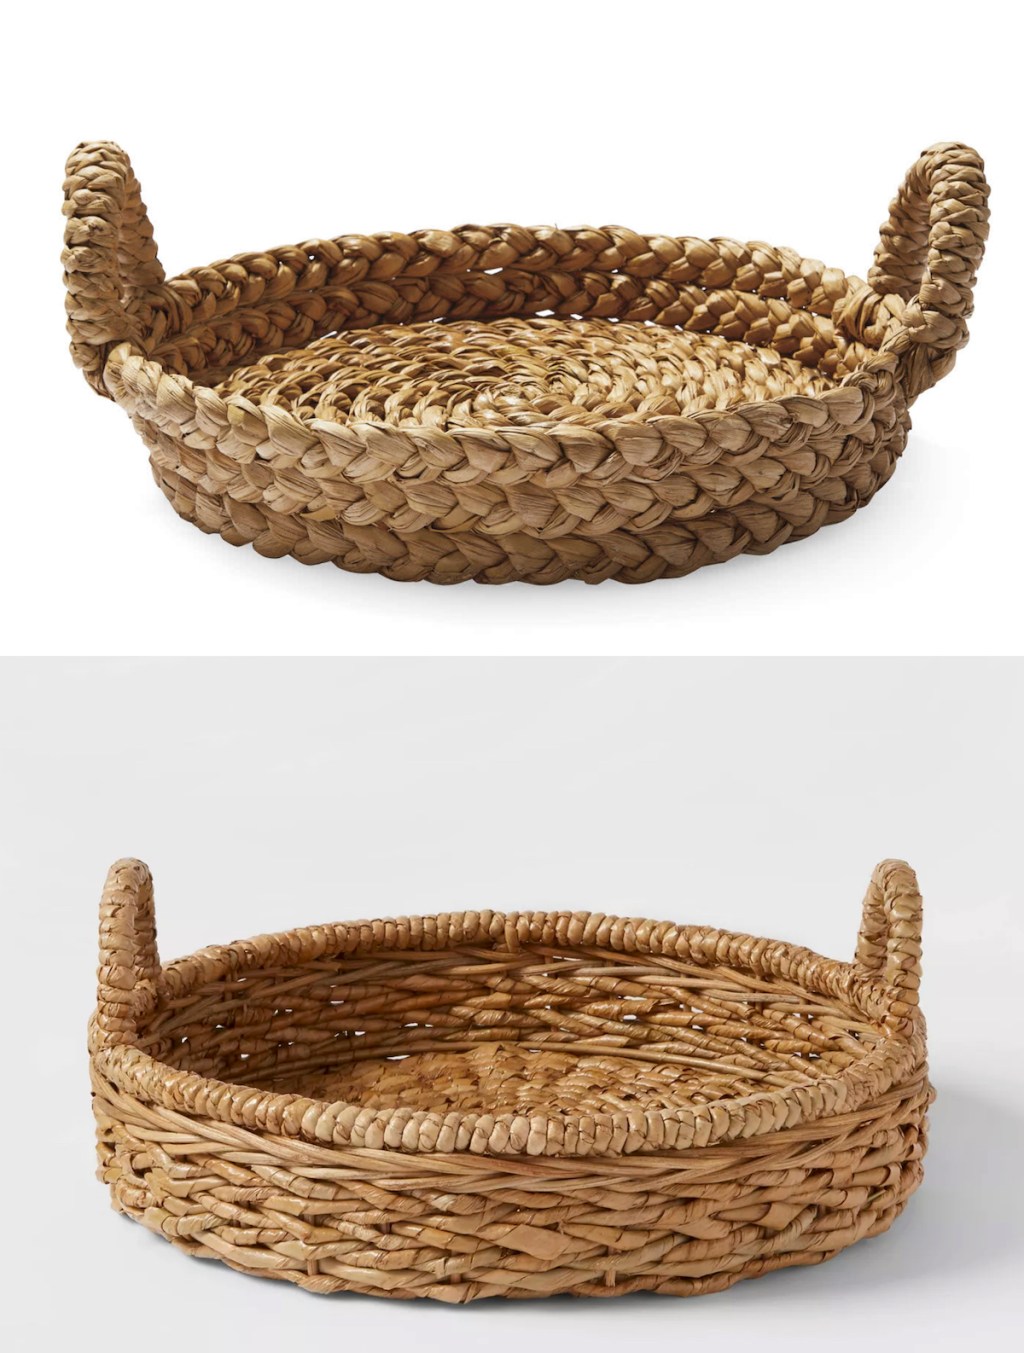 woven basket tray stock photos